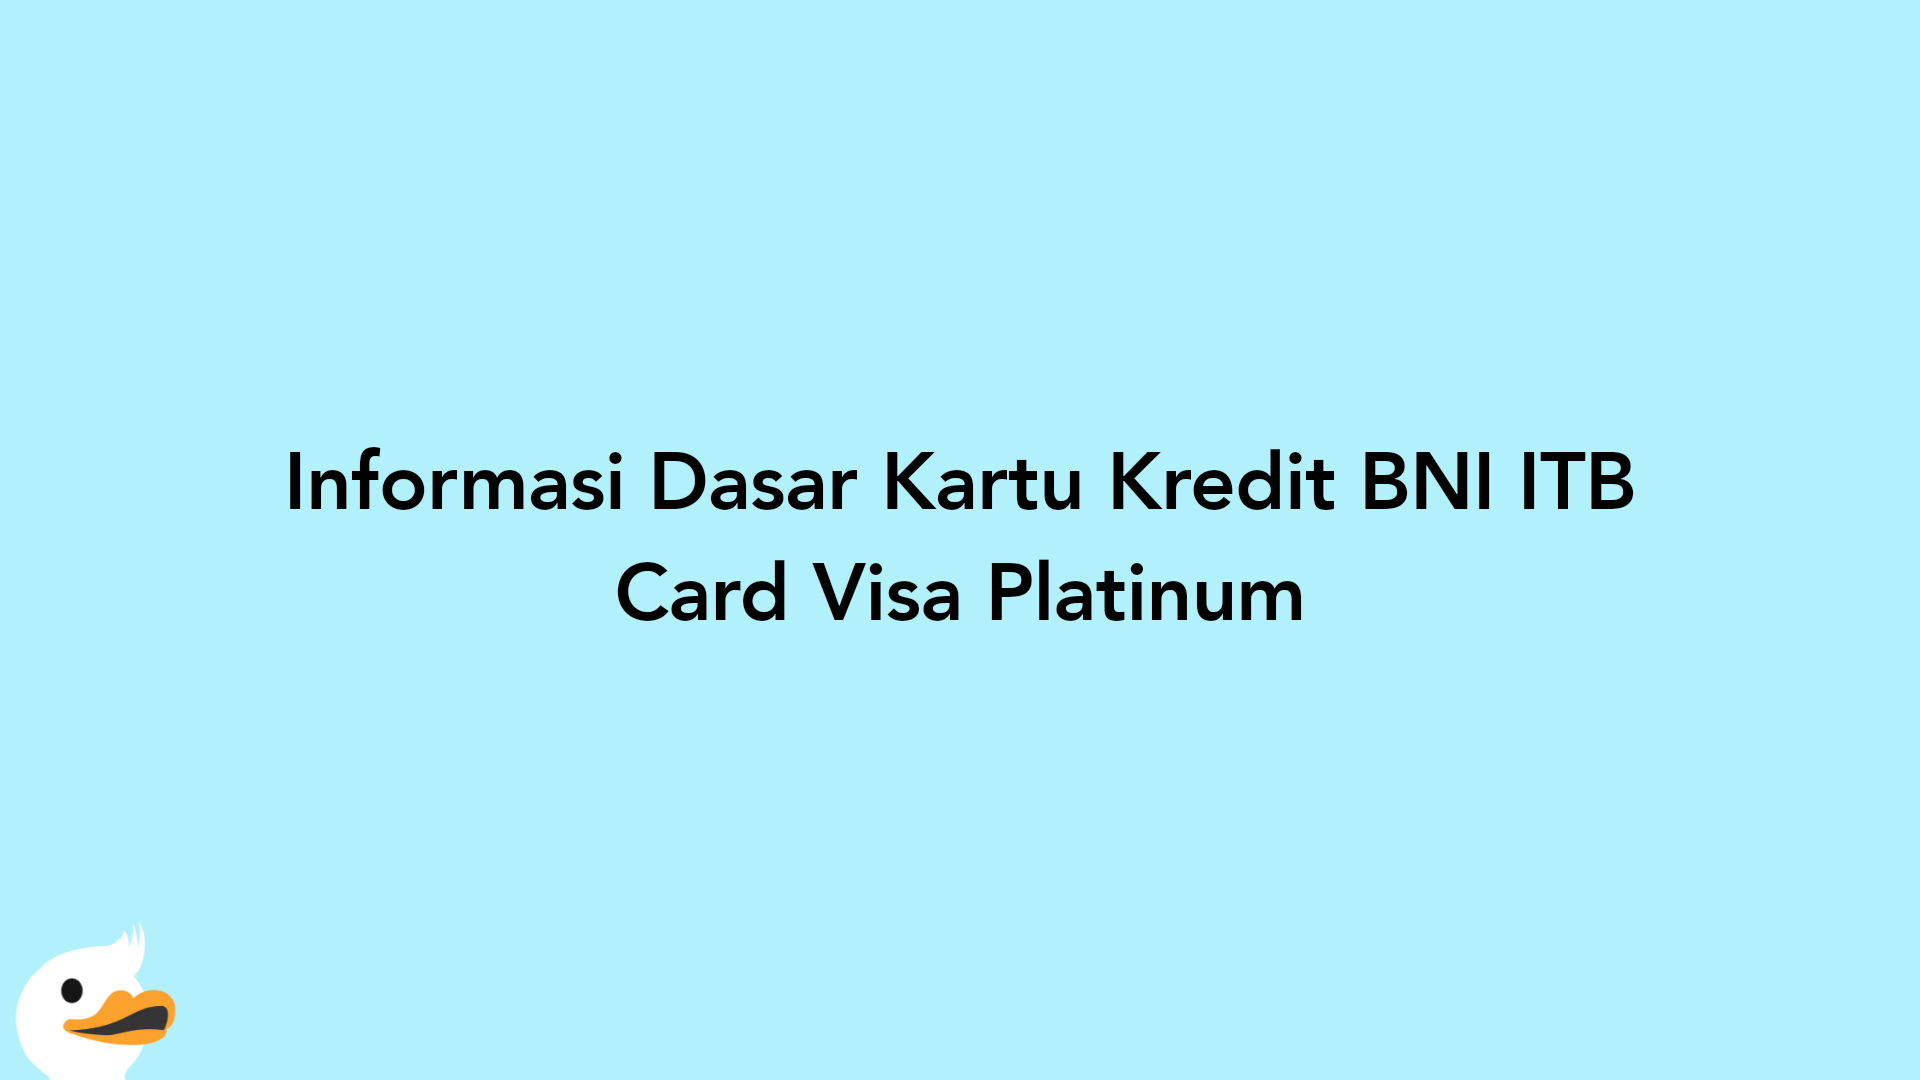 Informasi Dasar Kartu Kredit BNI ITB Card Visa Platinum